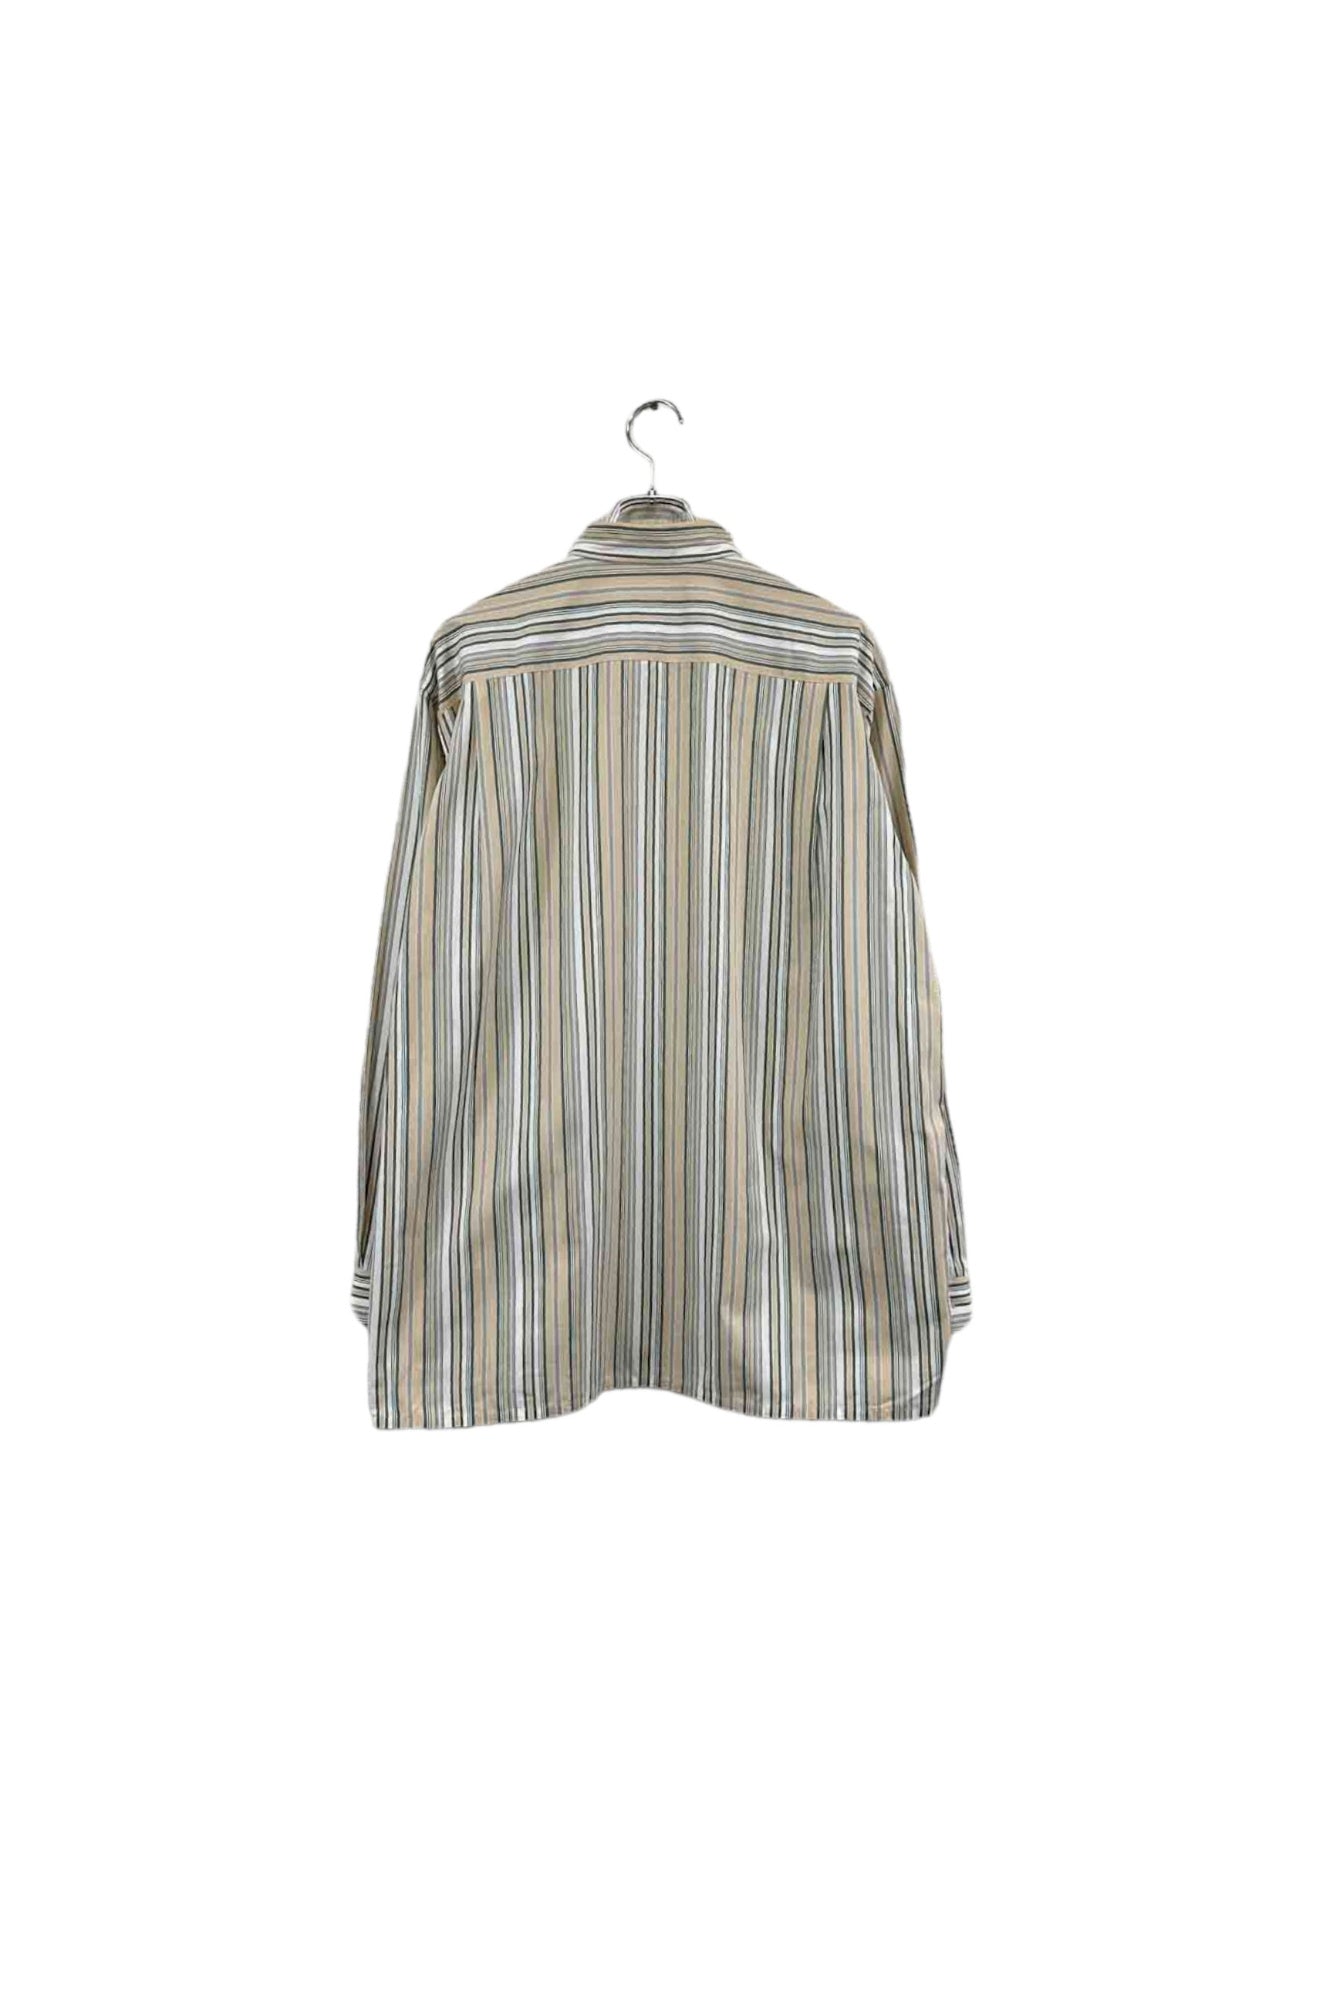 Christian Dior MONSIEUR striped shirt